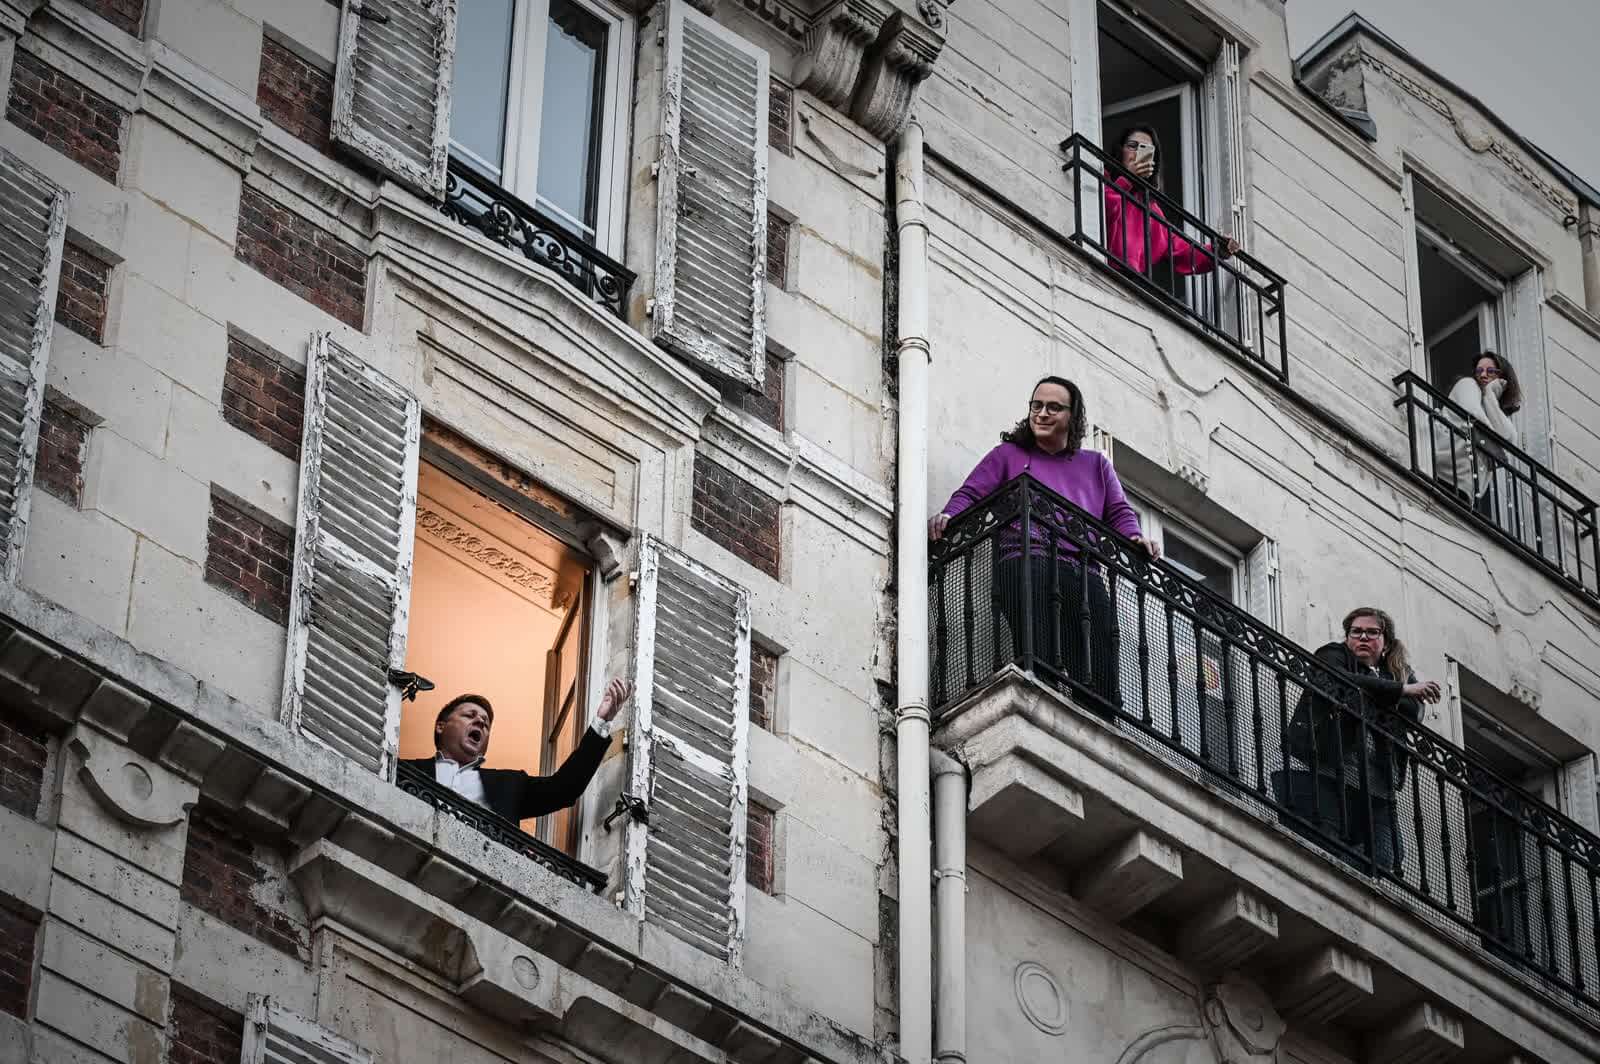 26 Μαρτίου: Ο τραγουδιστής της Όπερας Stephane Senechal τραγουδά για τους γείτονές του από το παράθυρο του διαμερίσματός του στο Παρίσι. 10η ημέρα αυστηρού lockdown στη Γαλλία.